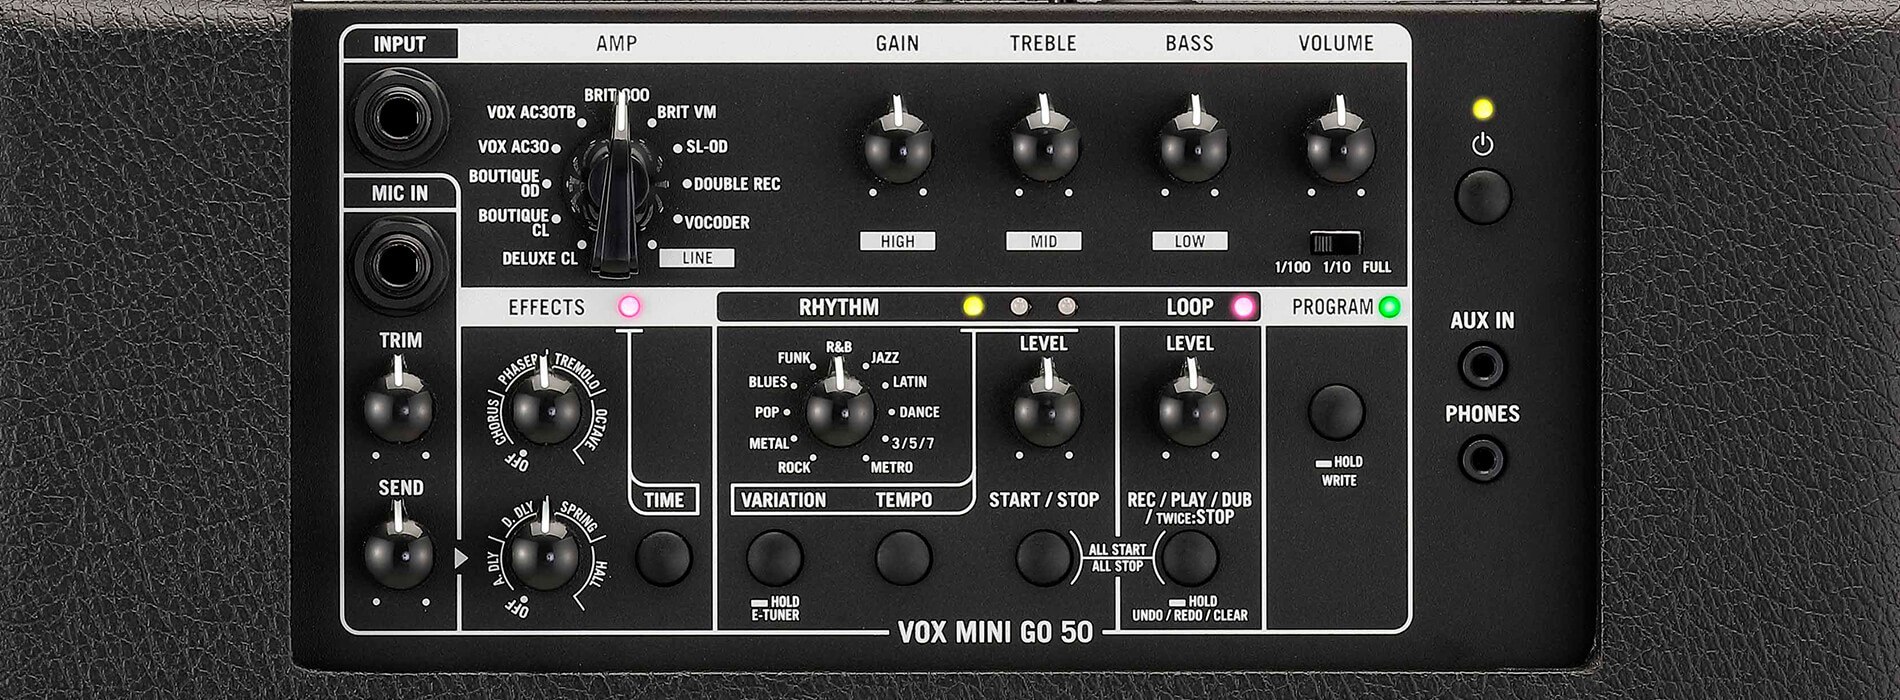 VOX MINI GO 50 - Vox Amps